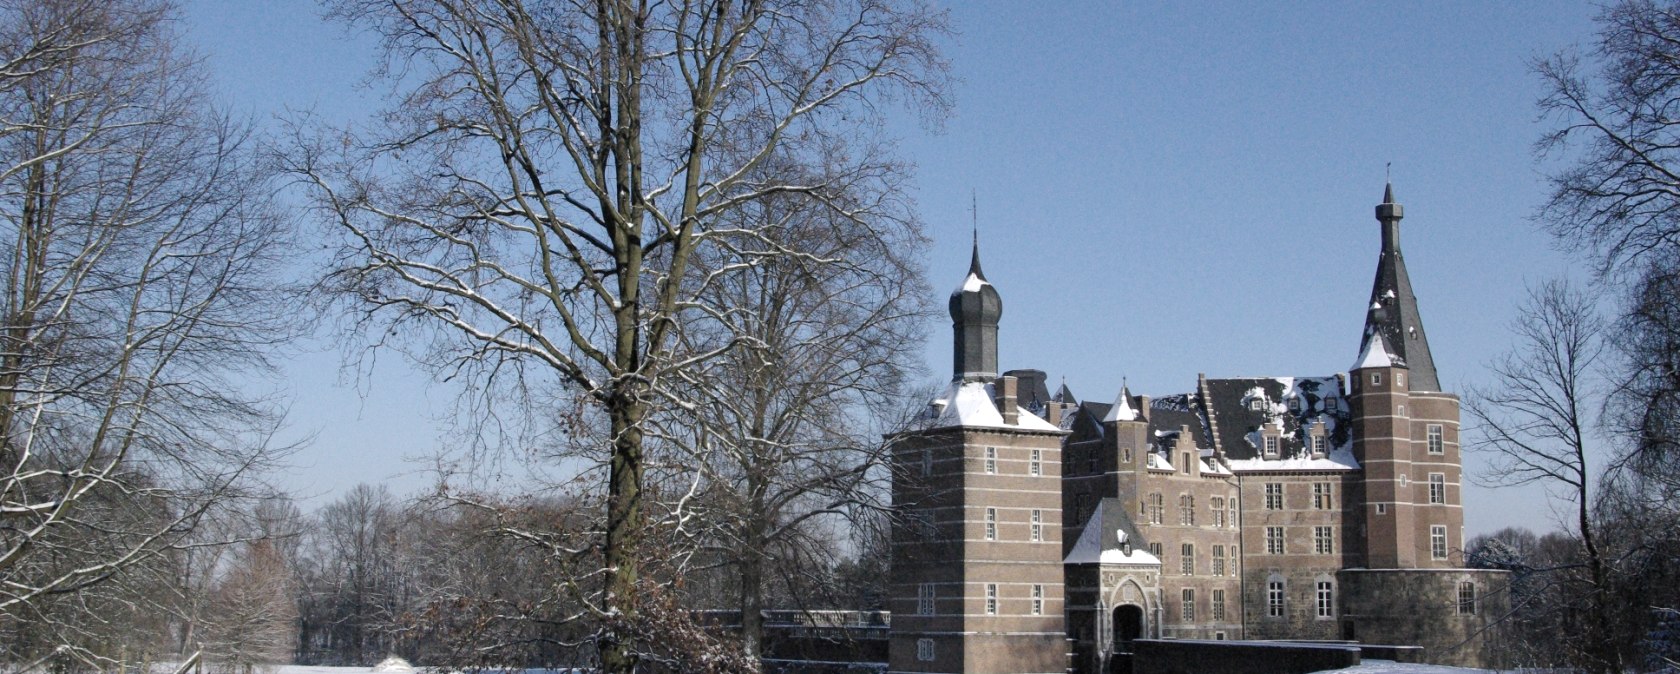 Schloss Merode, © Entwicklungsgesellschaft indeland GmbH